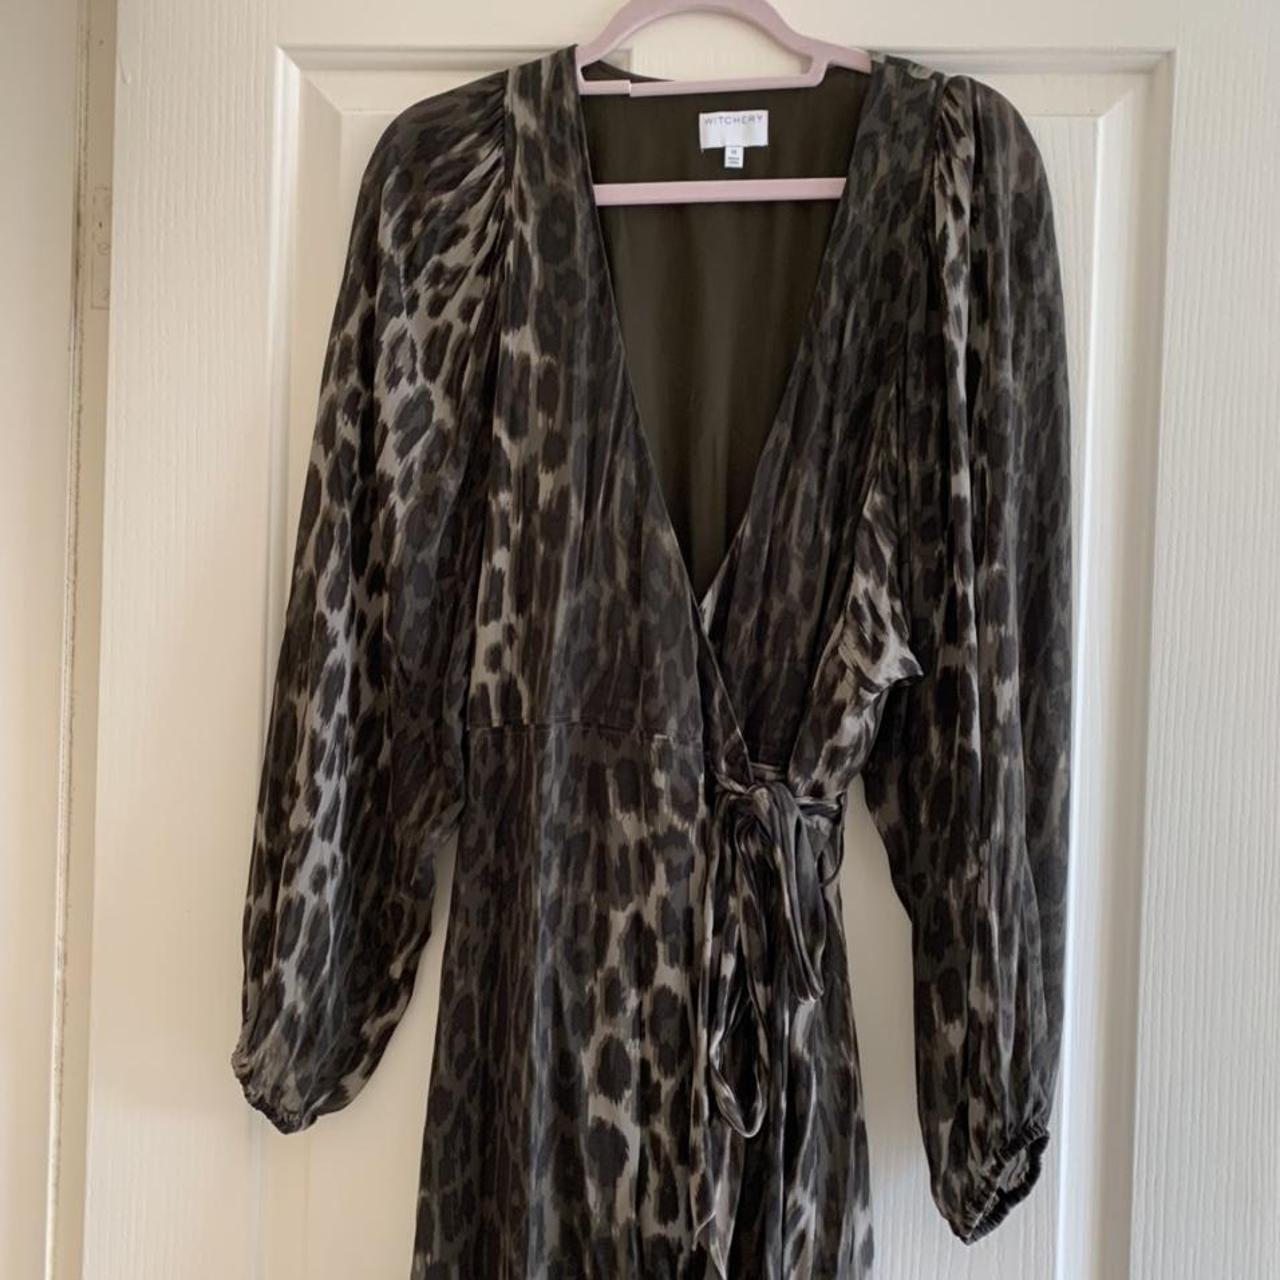 Witchery khaki leopard print wrap dress. Worn once,... - Depop